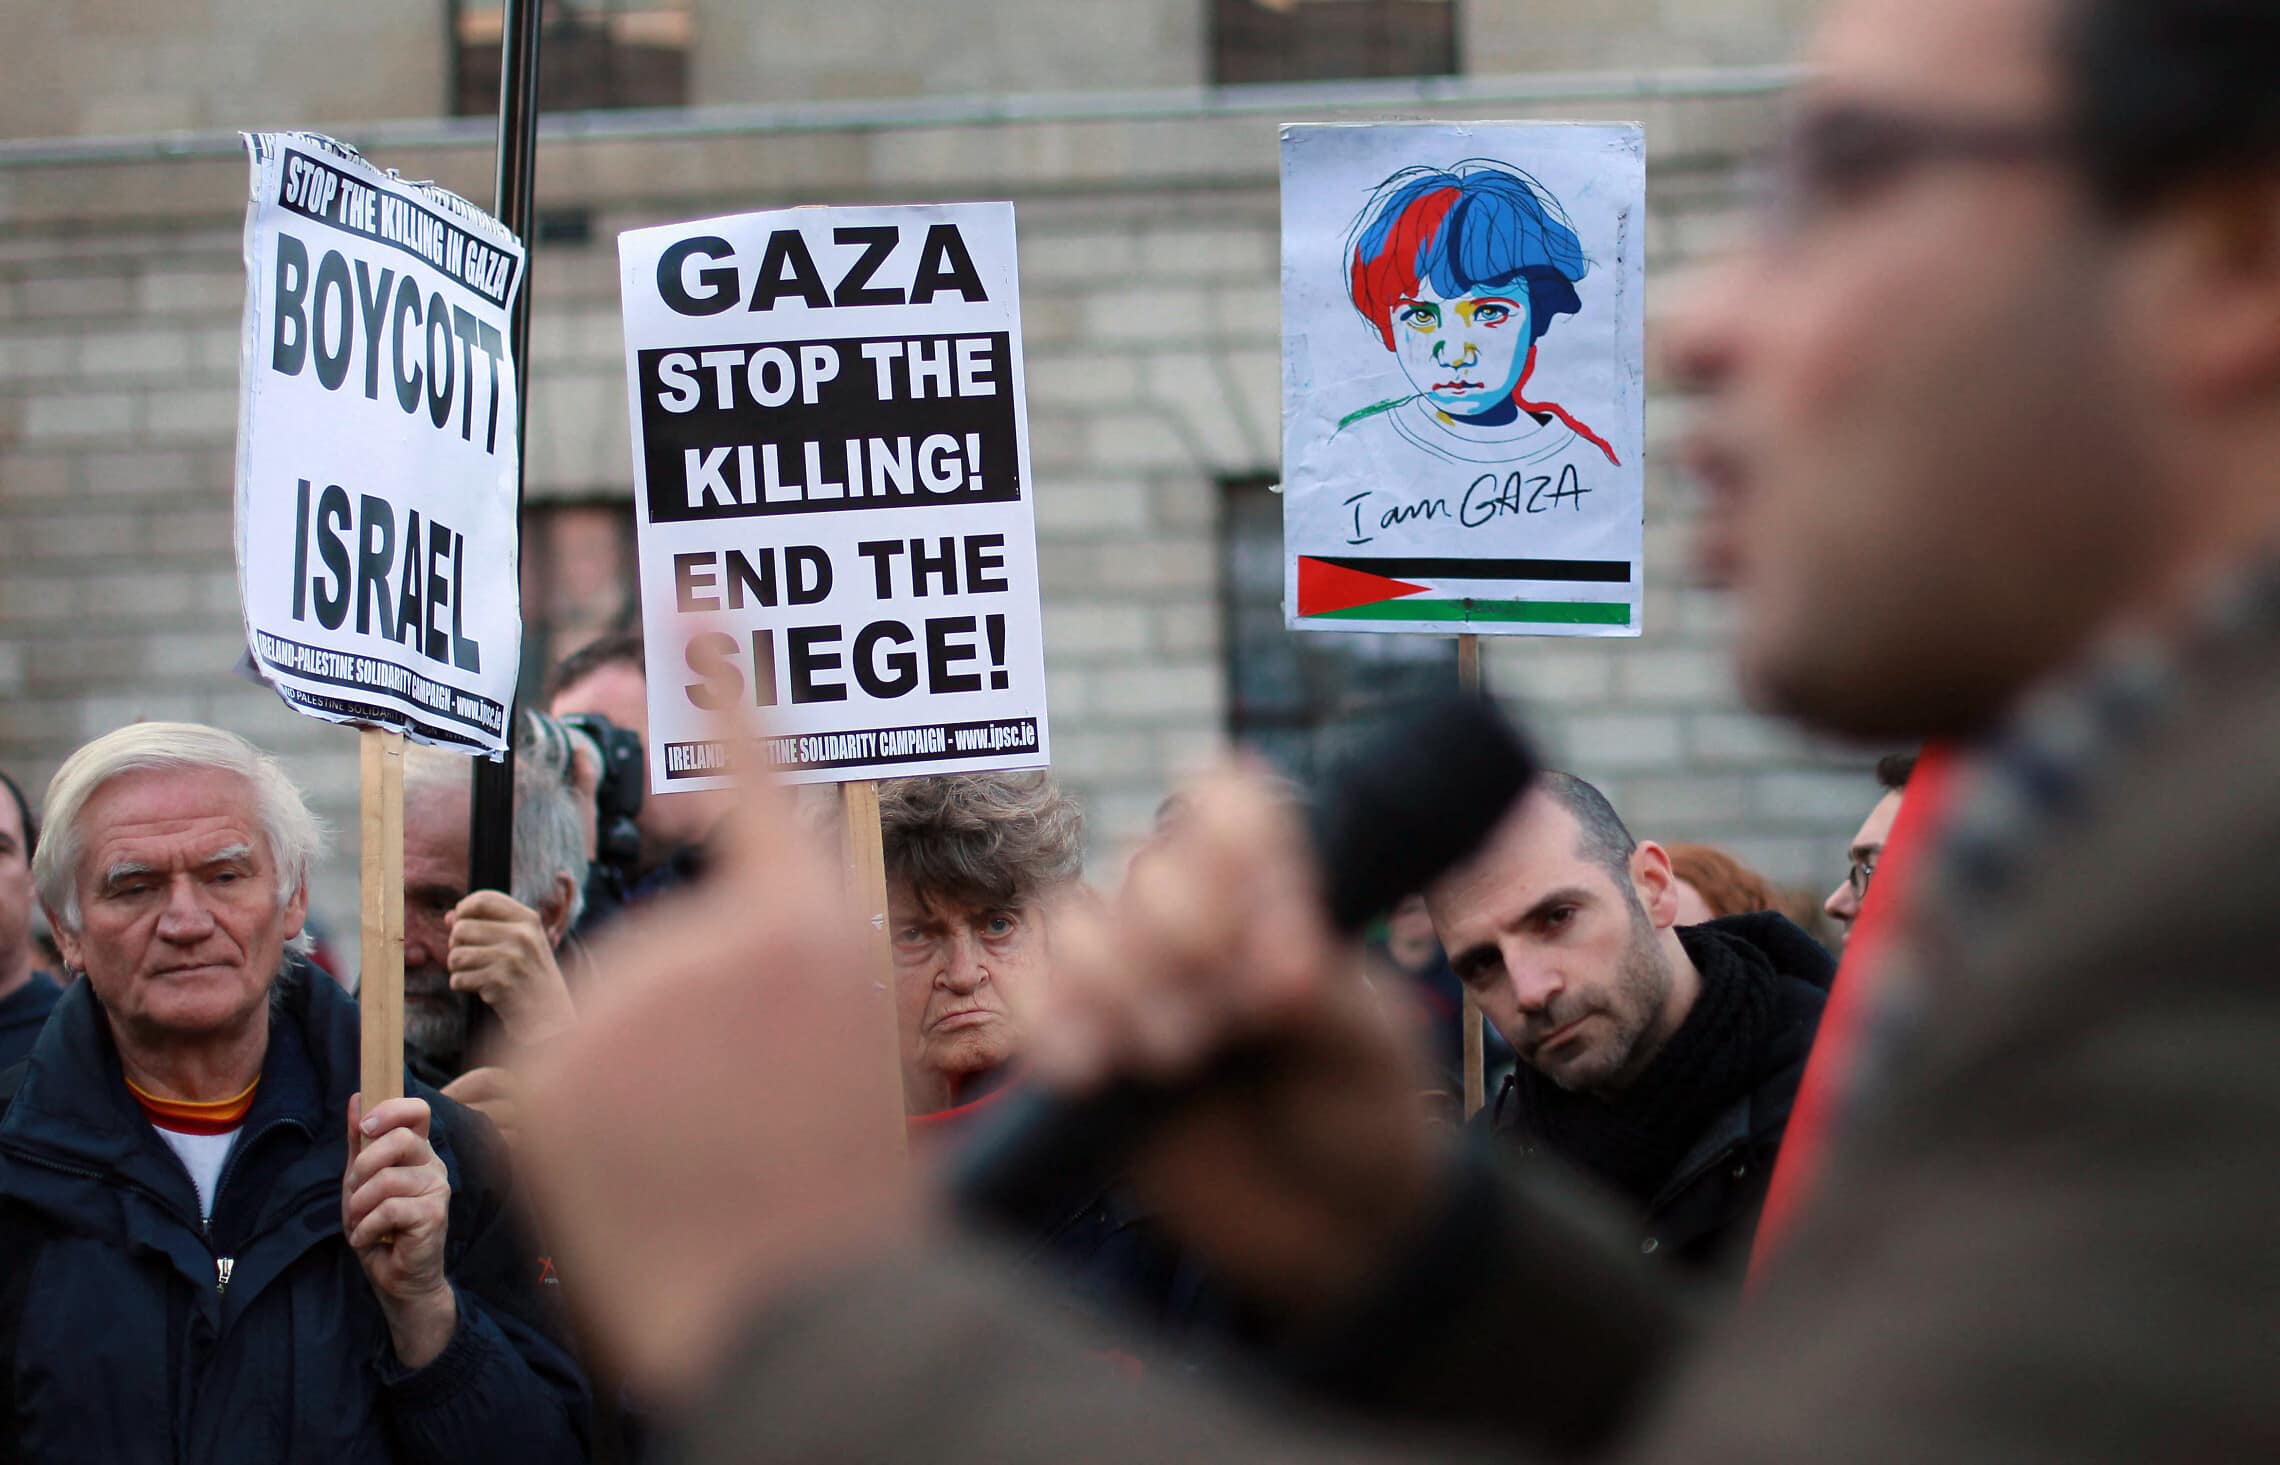 הפגנת סולידריות עם הפלסטינים באירלנד, 17 בנובמבר 2012 (צילום: PETER MUHLY / AFP)